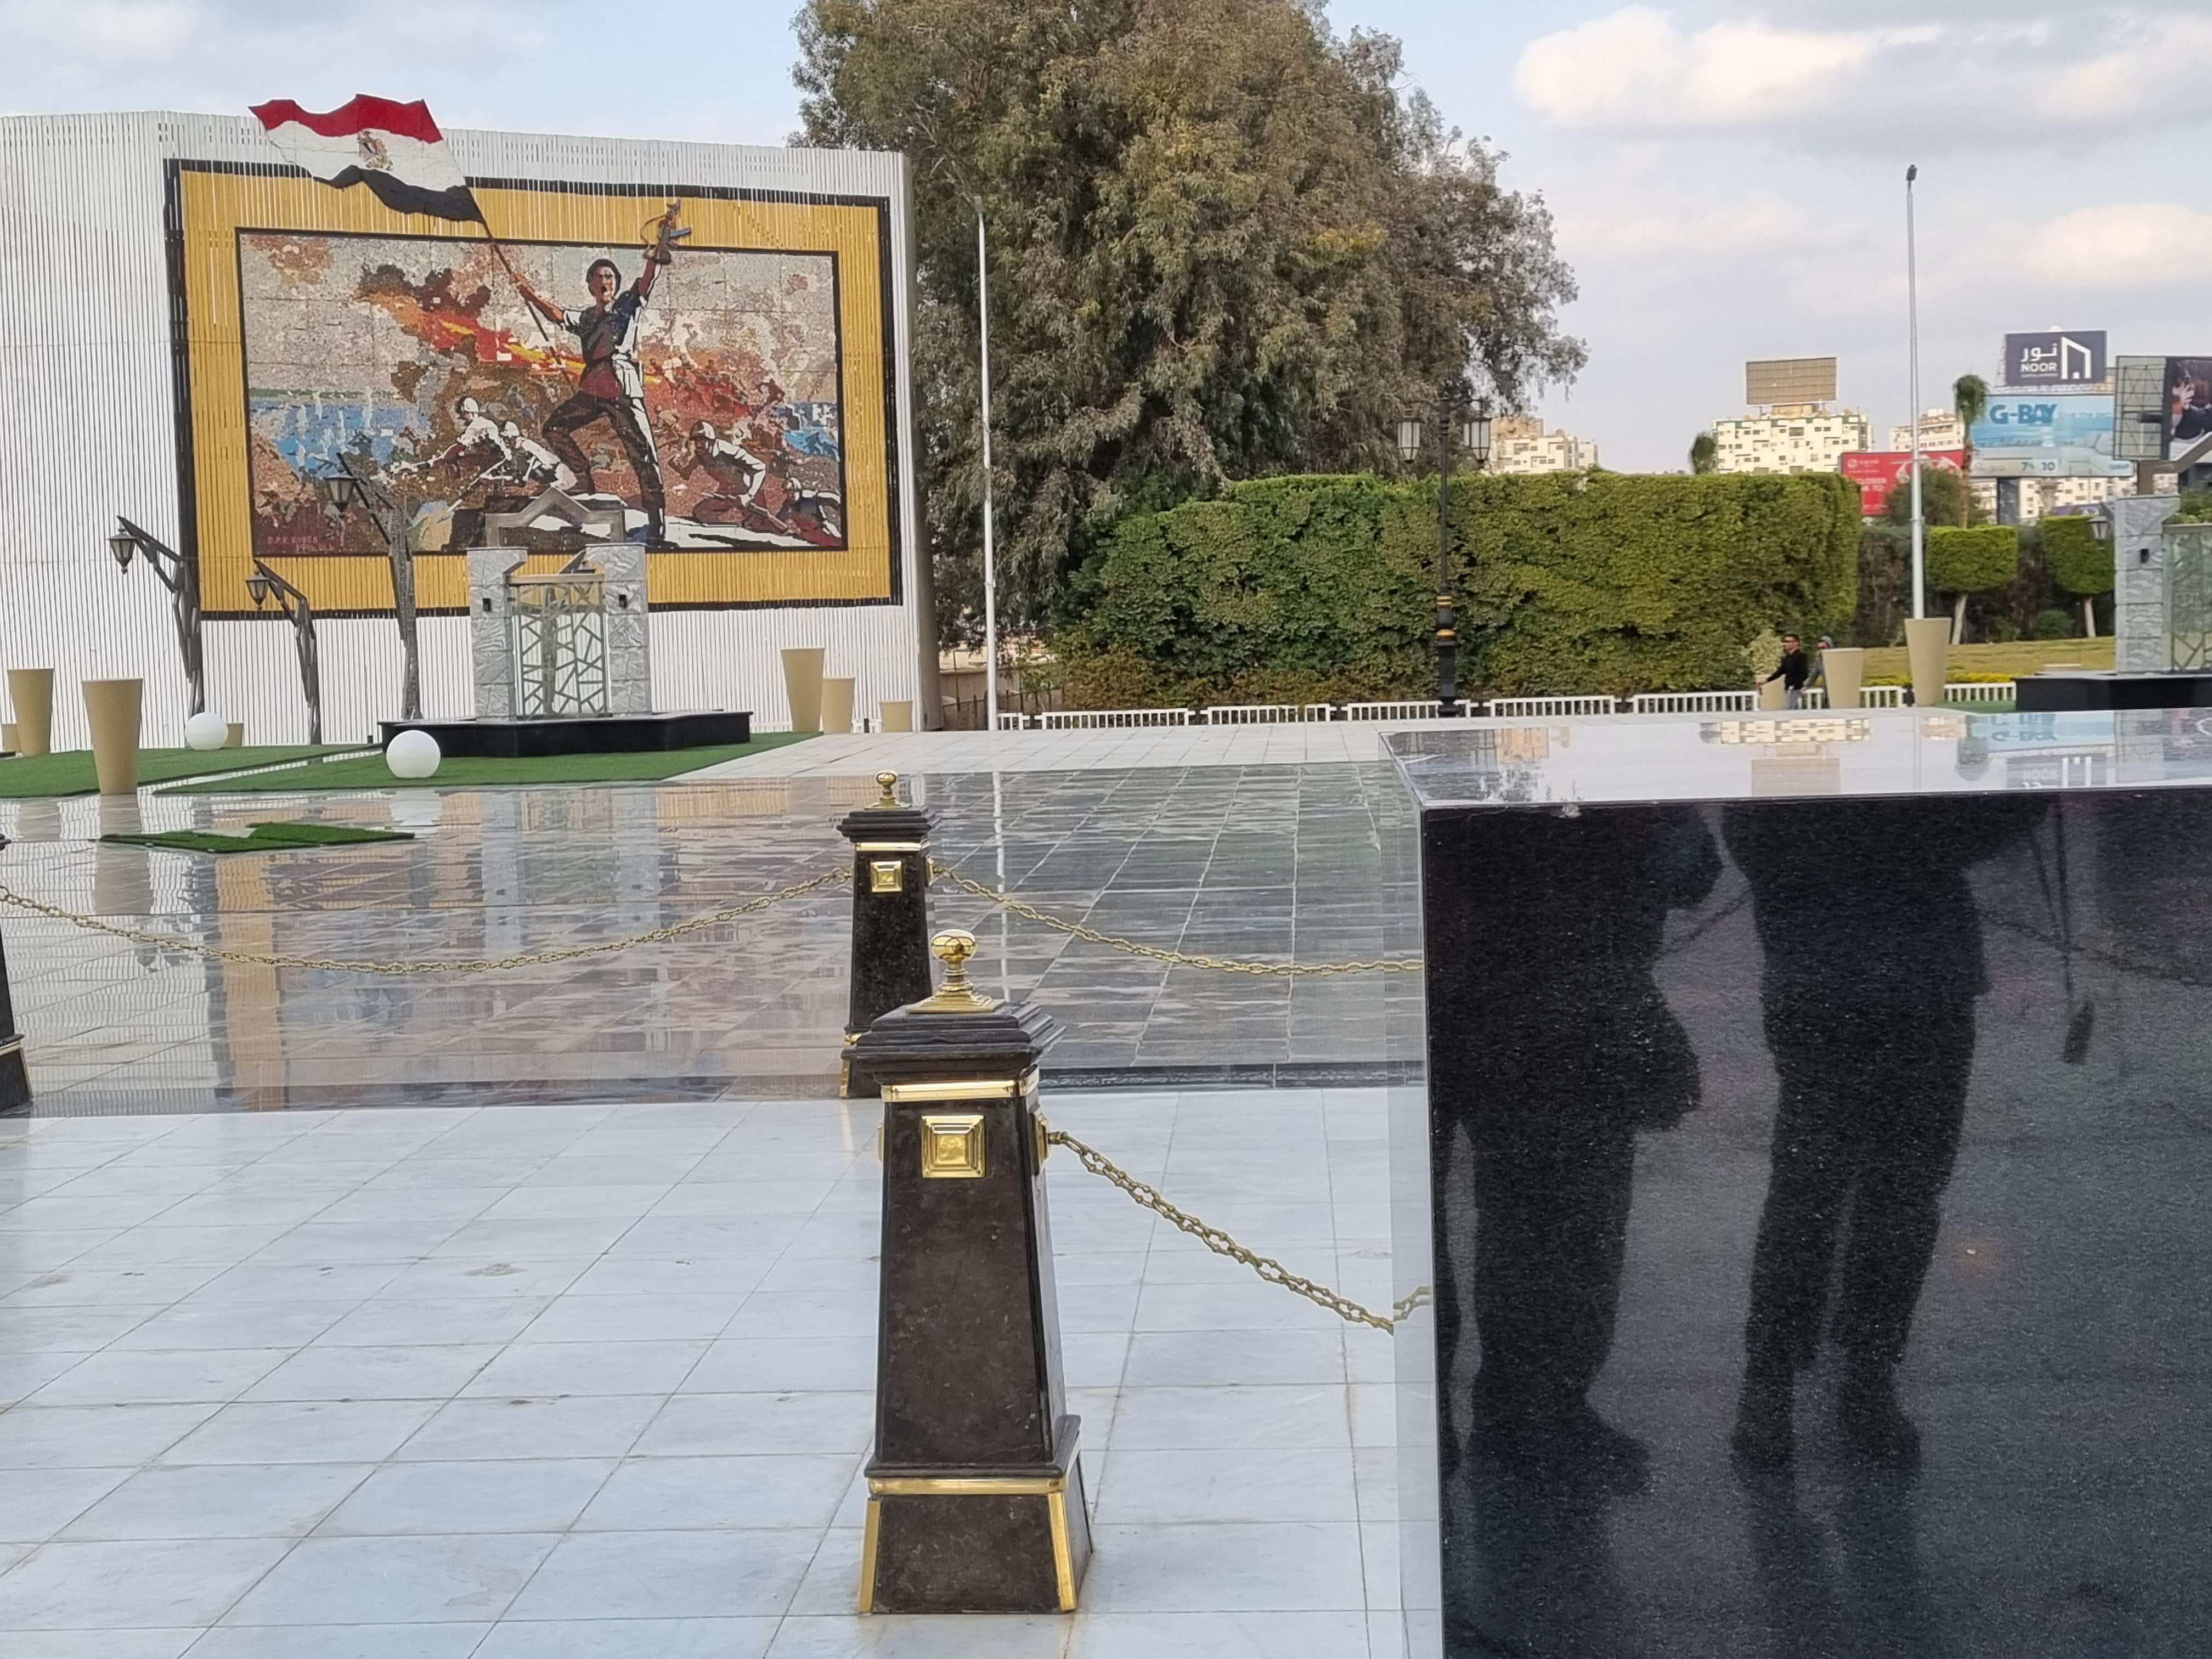 אנדרטה לזכר אנואר סאדאת שהוקמה במקום בו נרצח (מצריים) . בתמונת הניצחון נראה חייל מצרי מניף דגל מעל אחד המעוזים בתעלת סואץ. מבחינת מצריים, המלחמה הסתיימה ביום הרביעי עם כיבוש המוצבים.